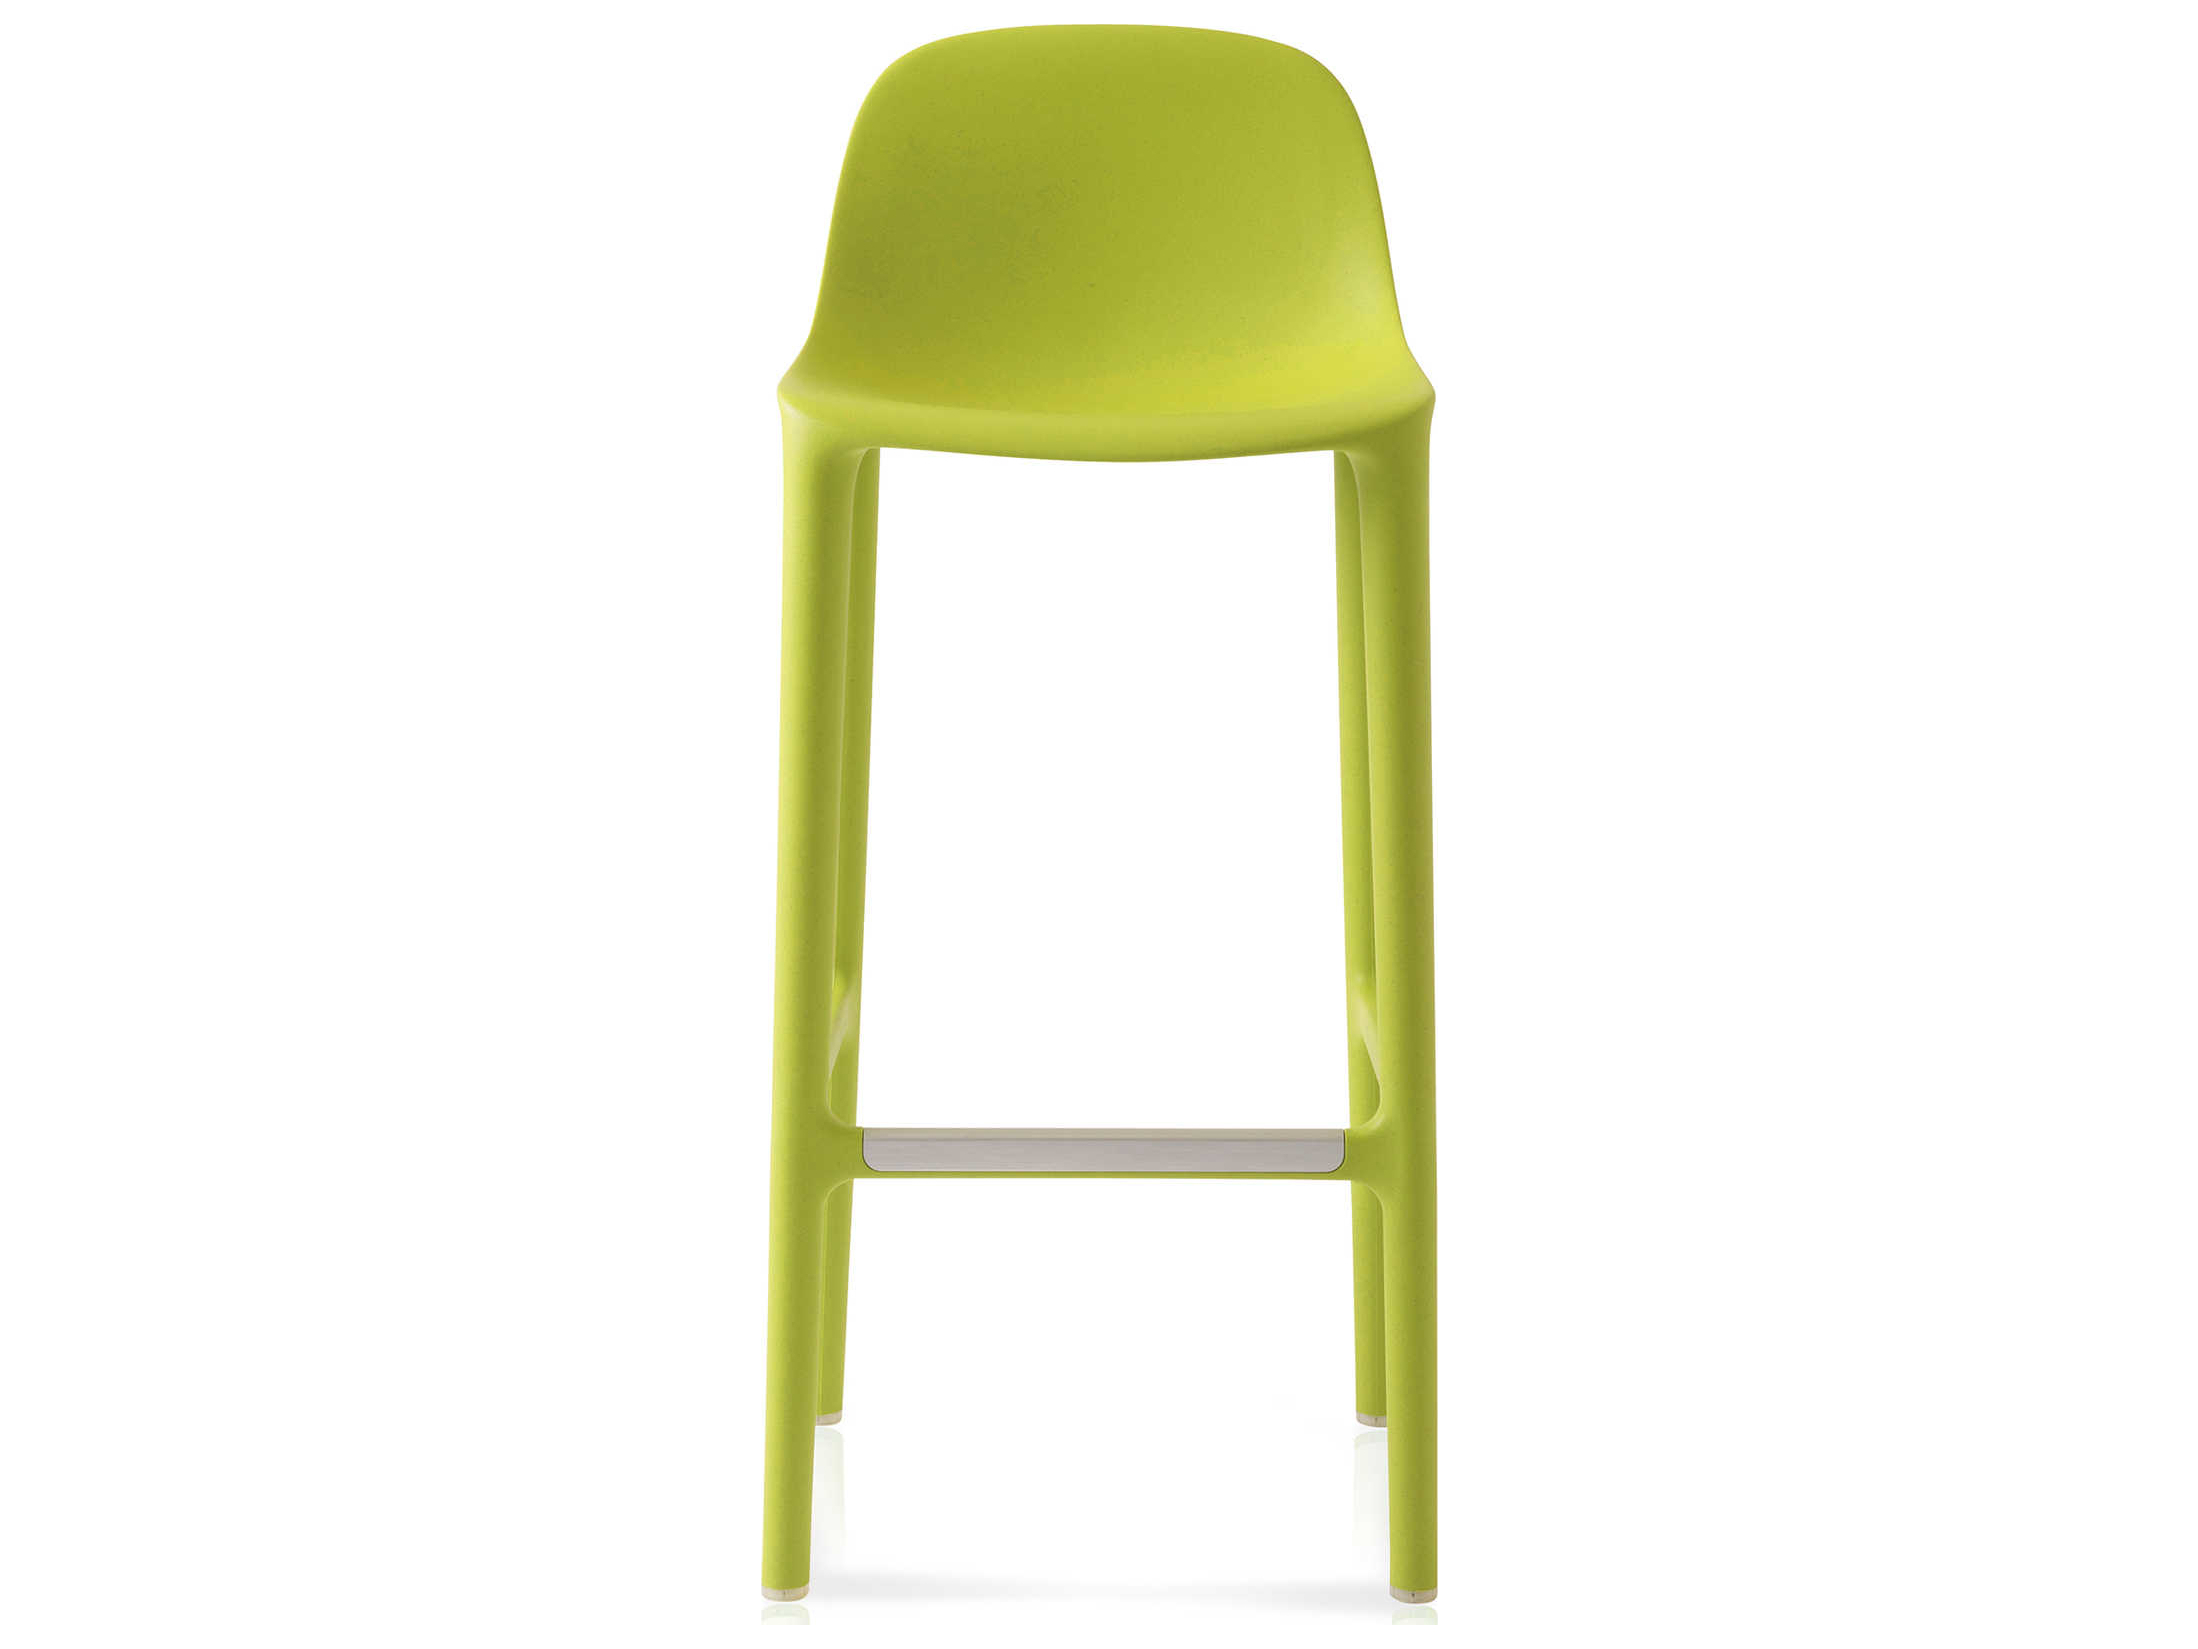 Итальянский барный стул желтый из пластика